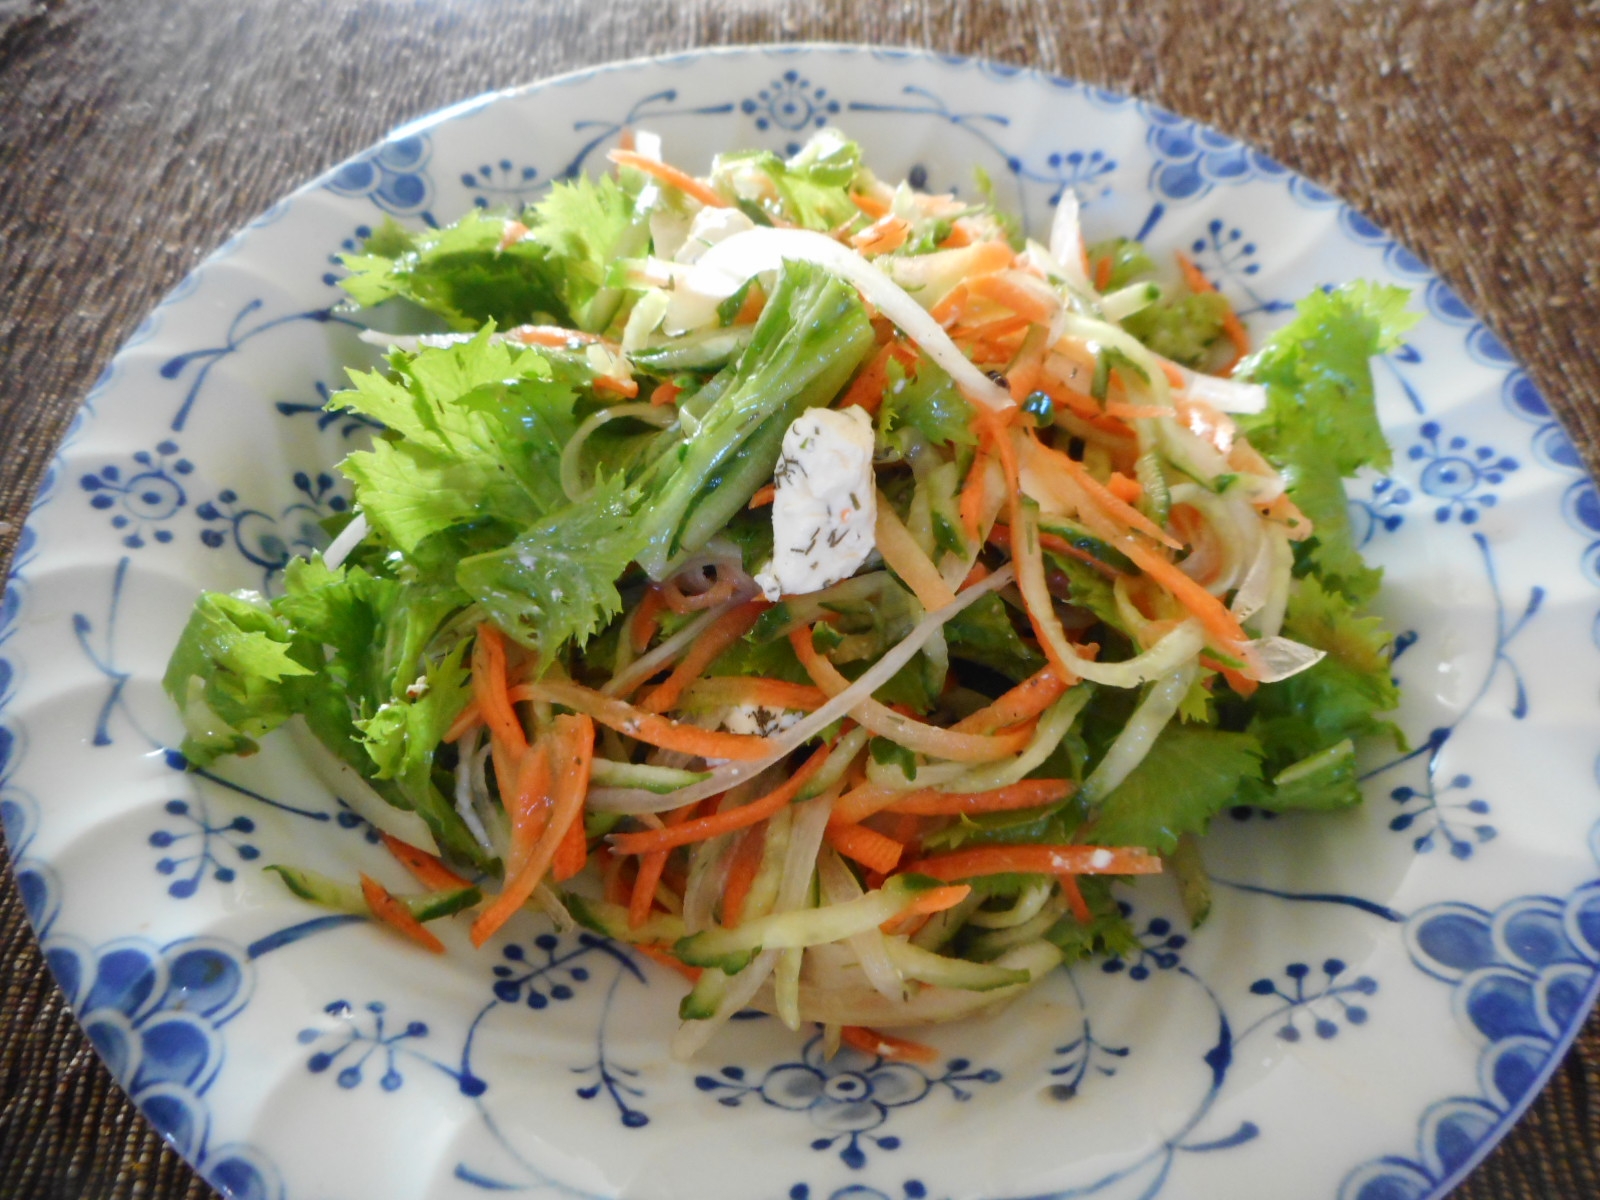 千切り野菜とわさび菜のディル風味サラダ